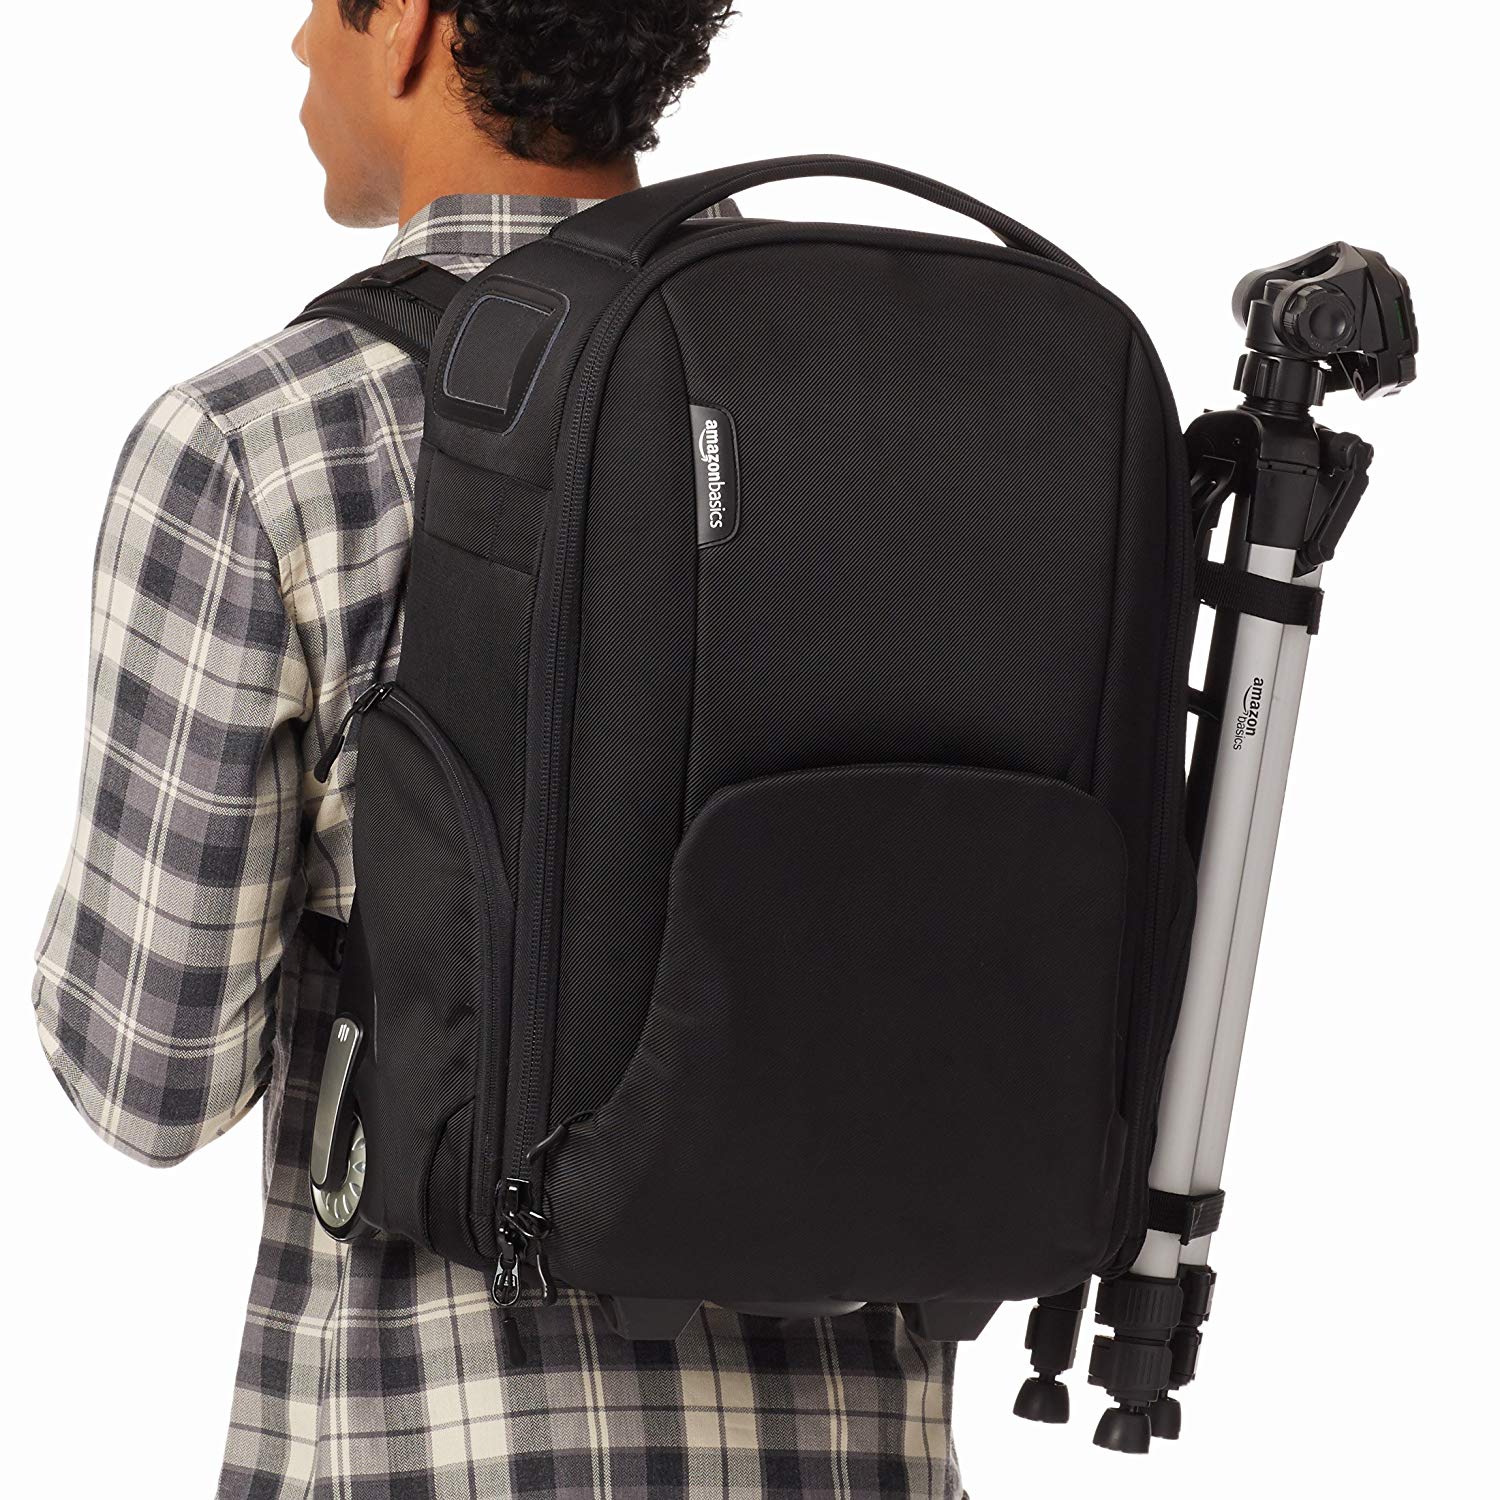 AmazonBasics Convertible Rolling Camera Backpack